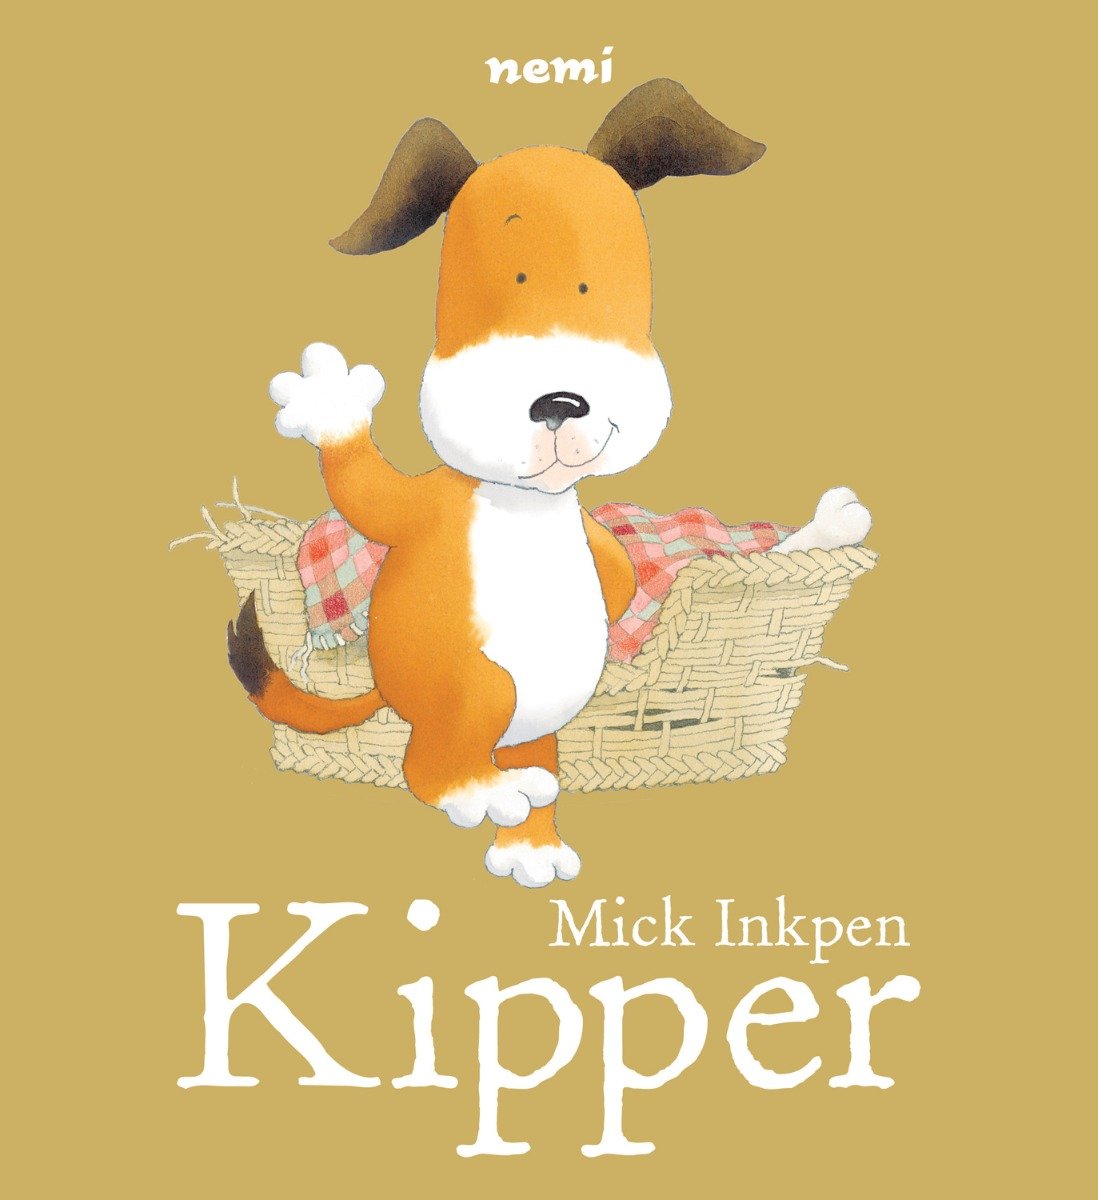 Kipper, Mick Inkpen